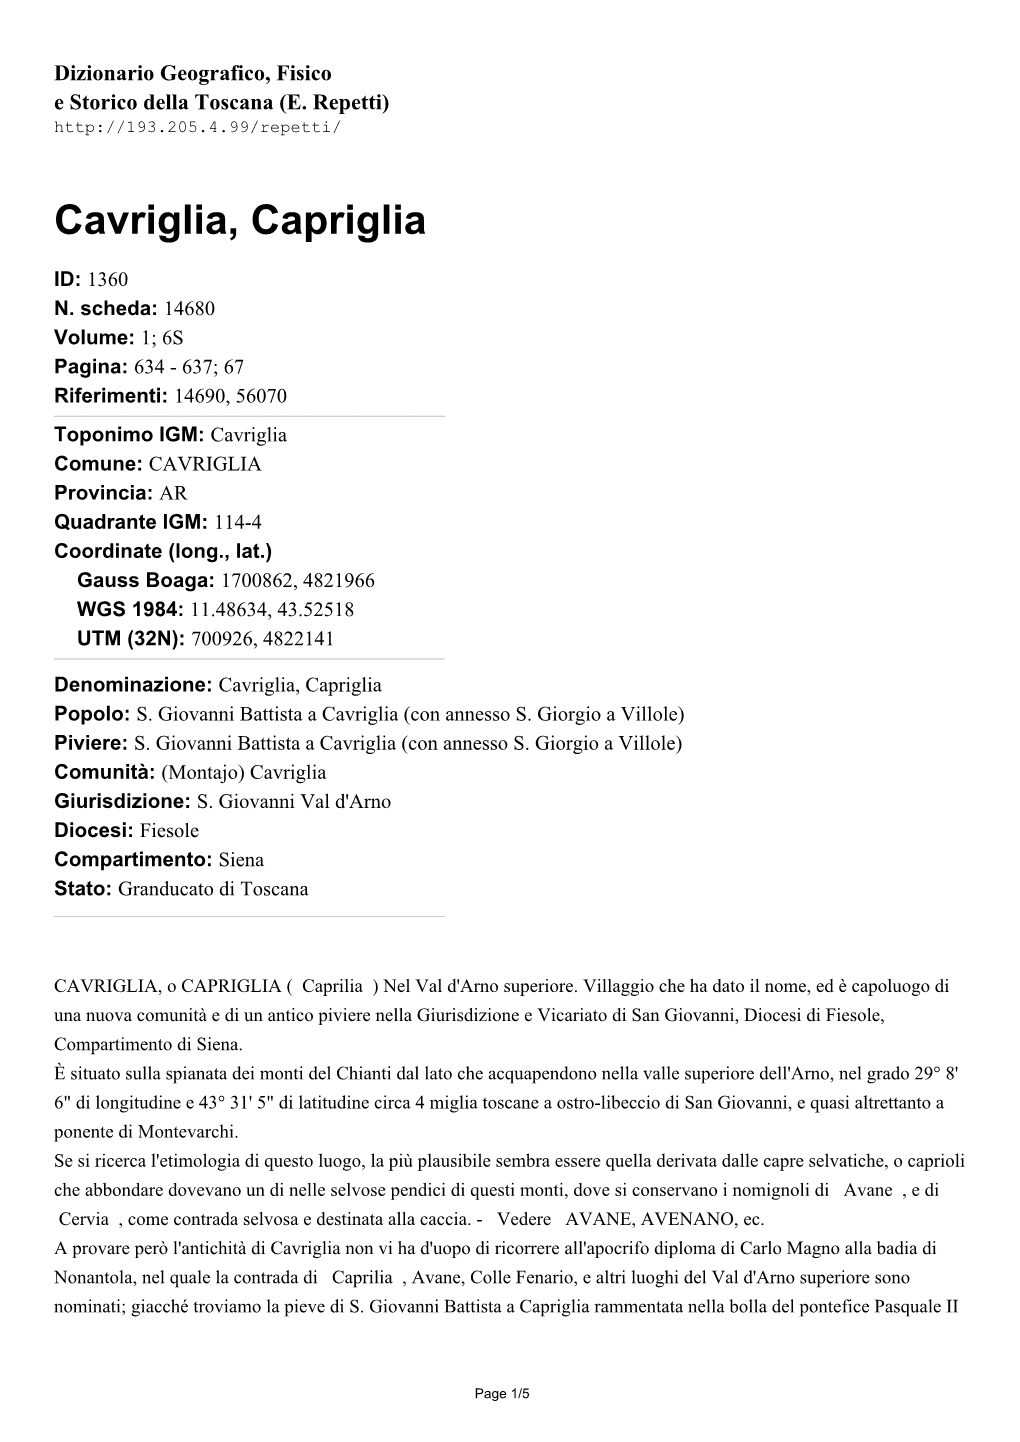 Cavriglia, Capriglia